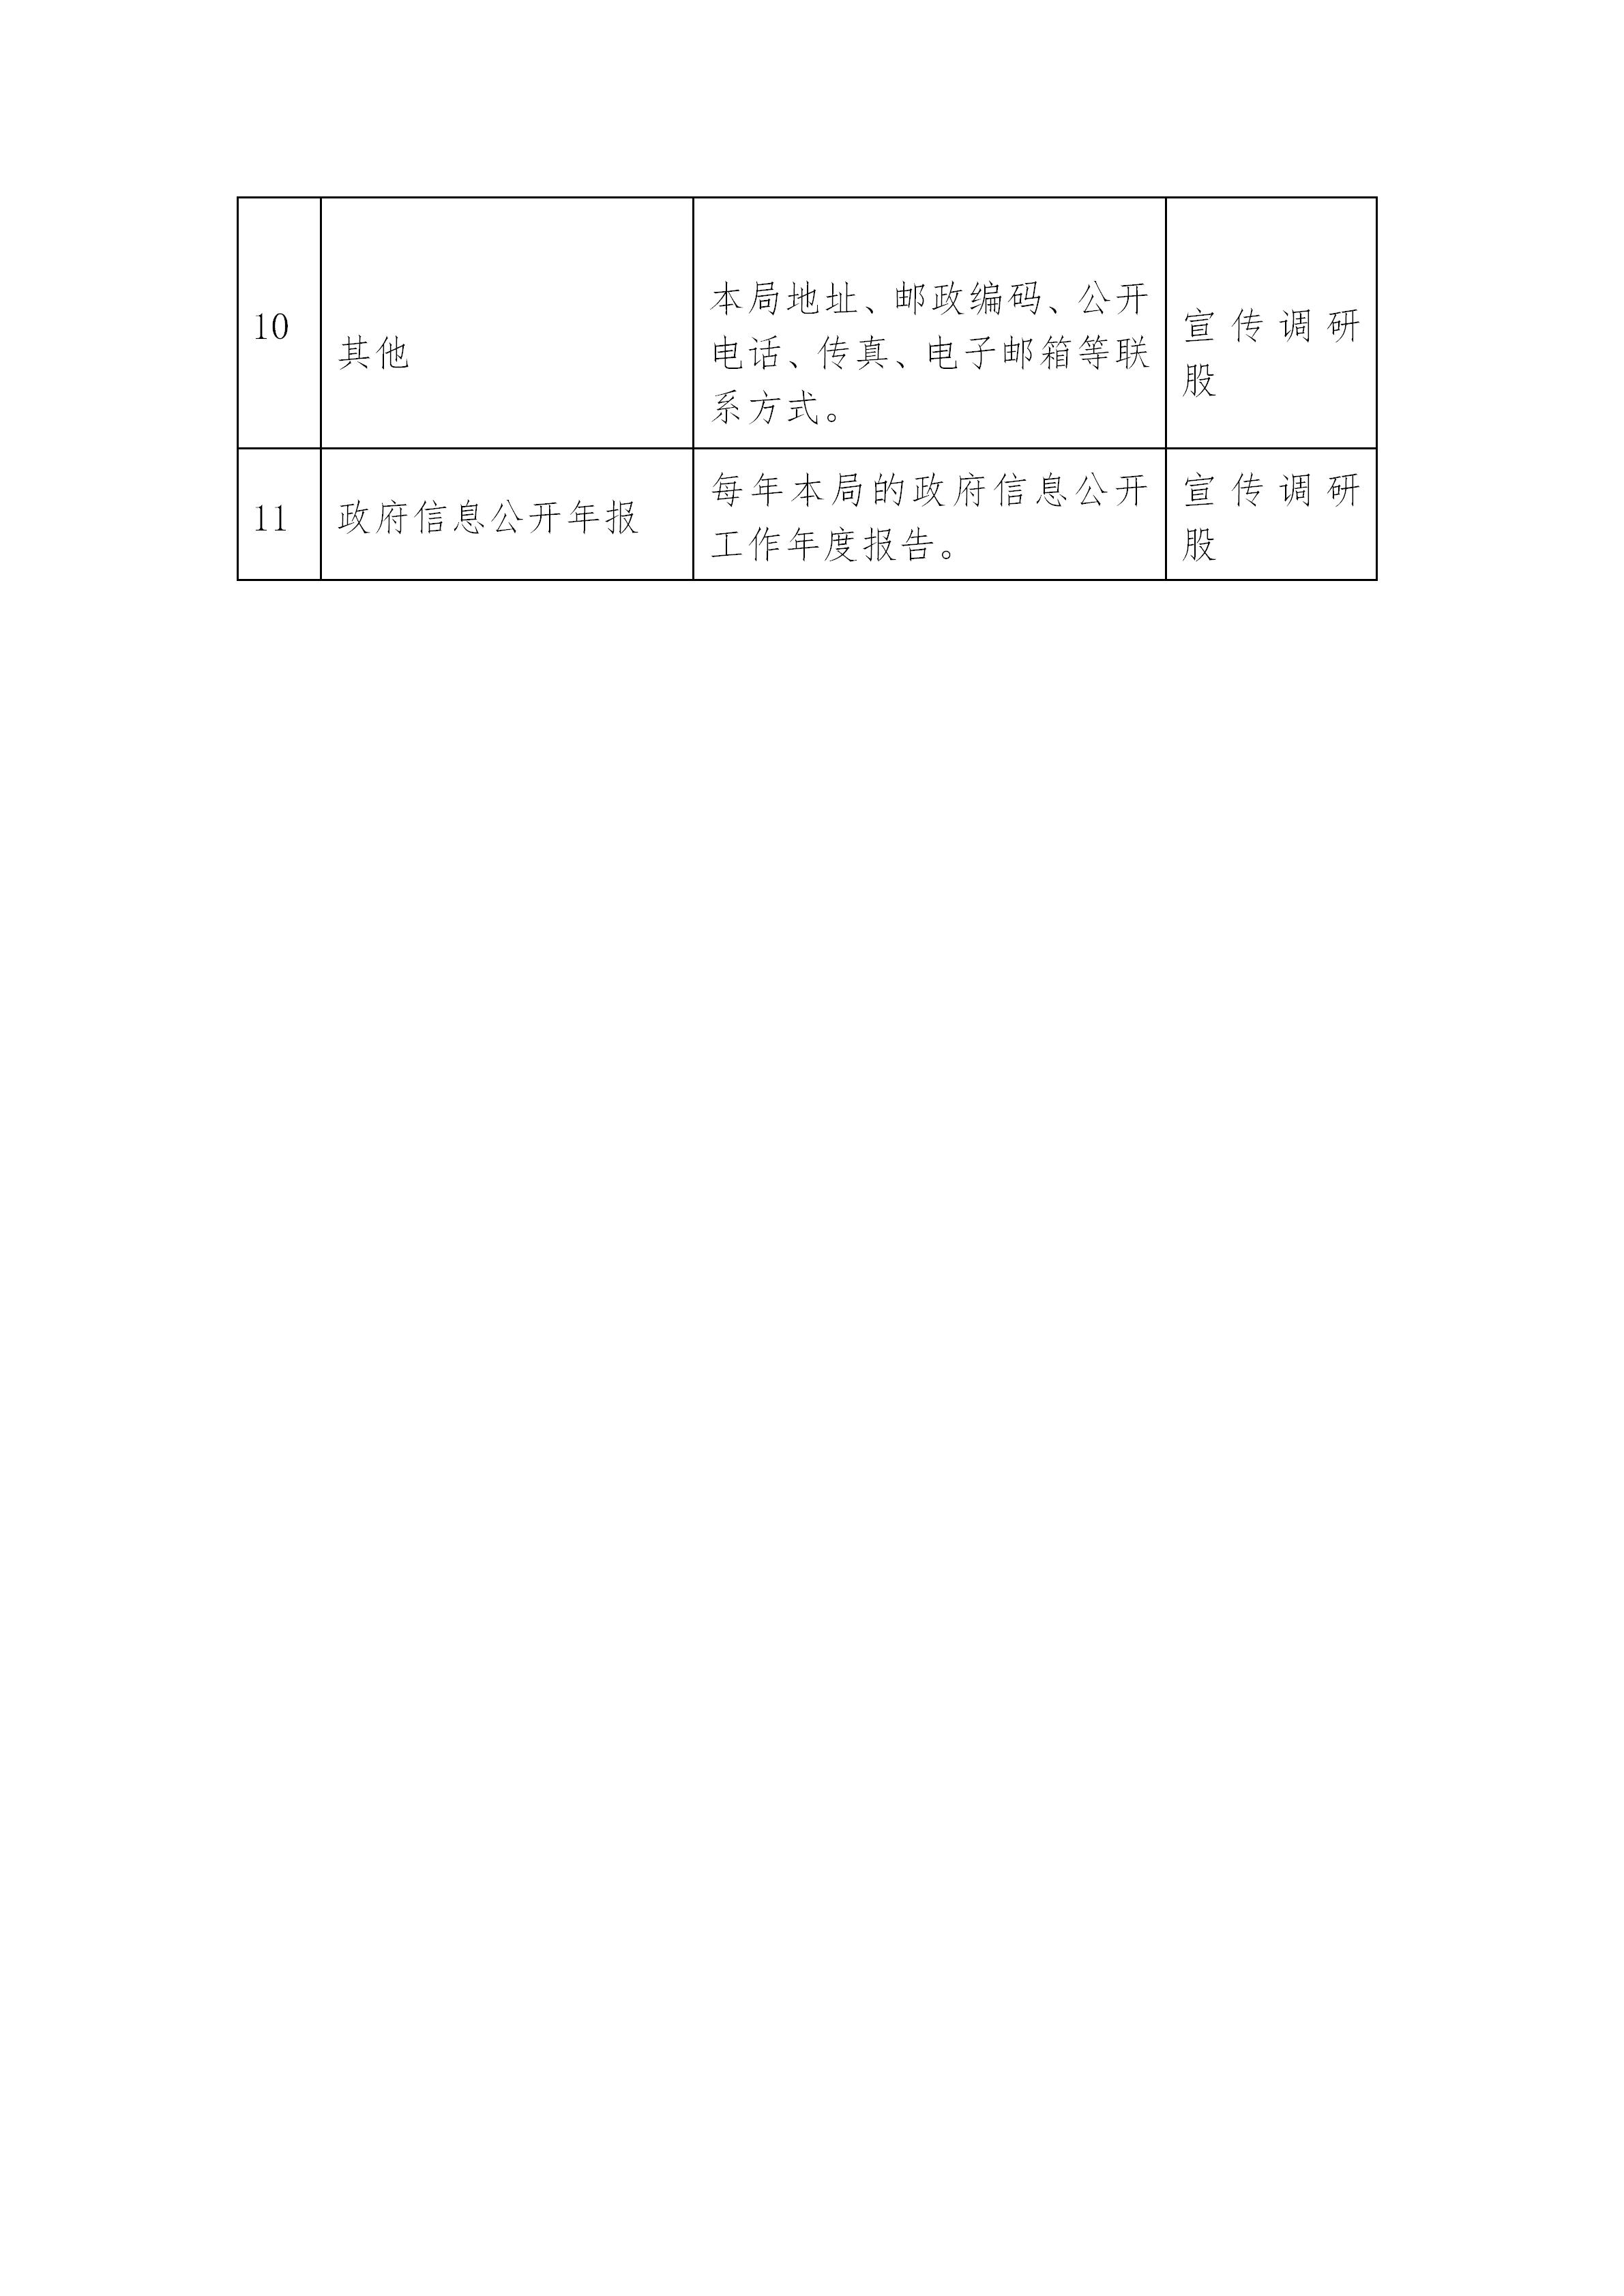 平远县公安局政府信息主动公开基本目录_04.jpg